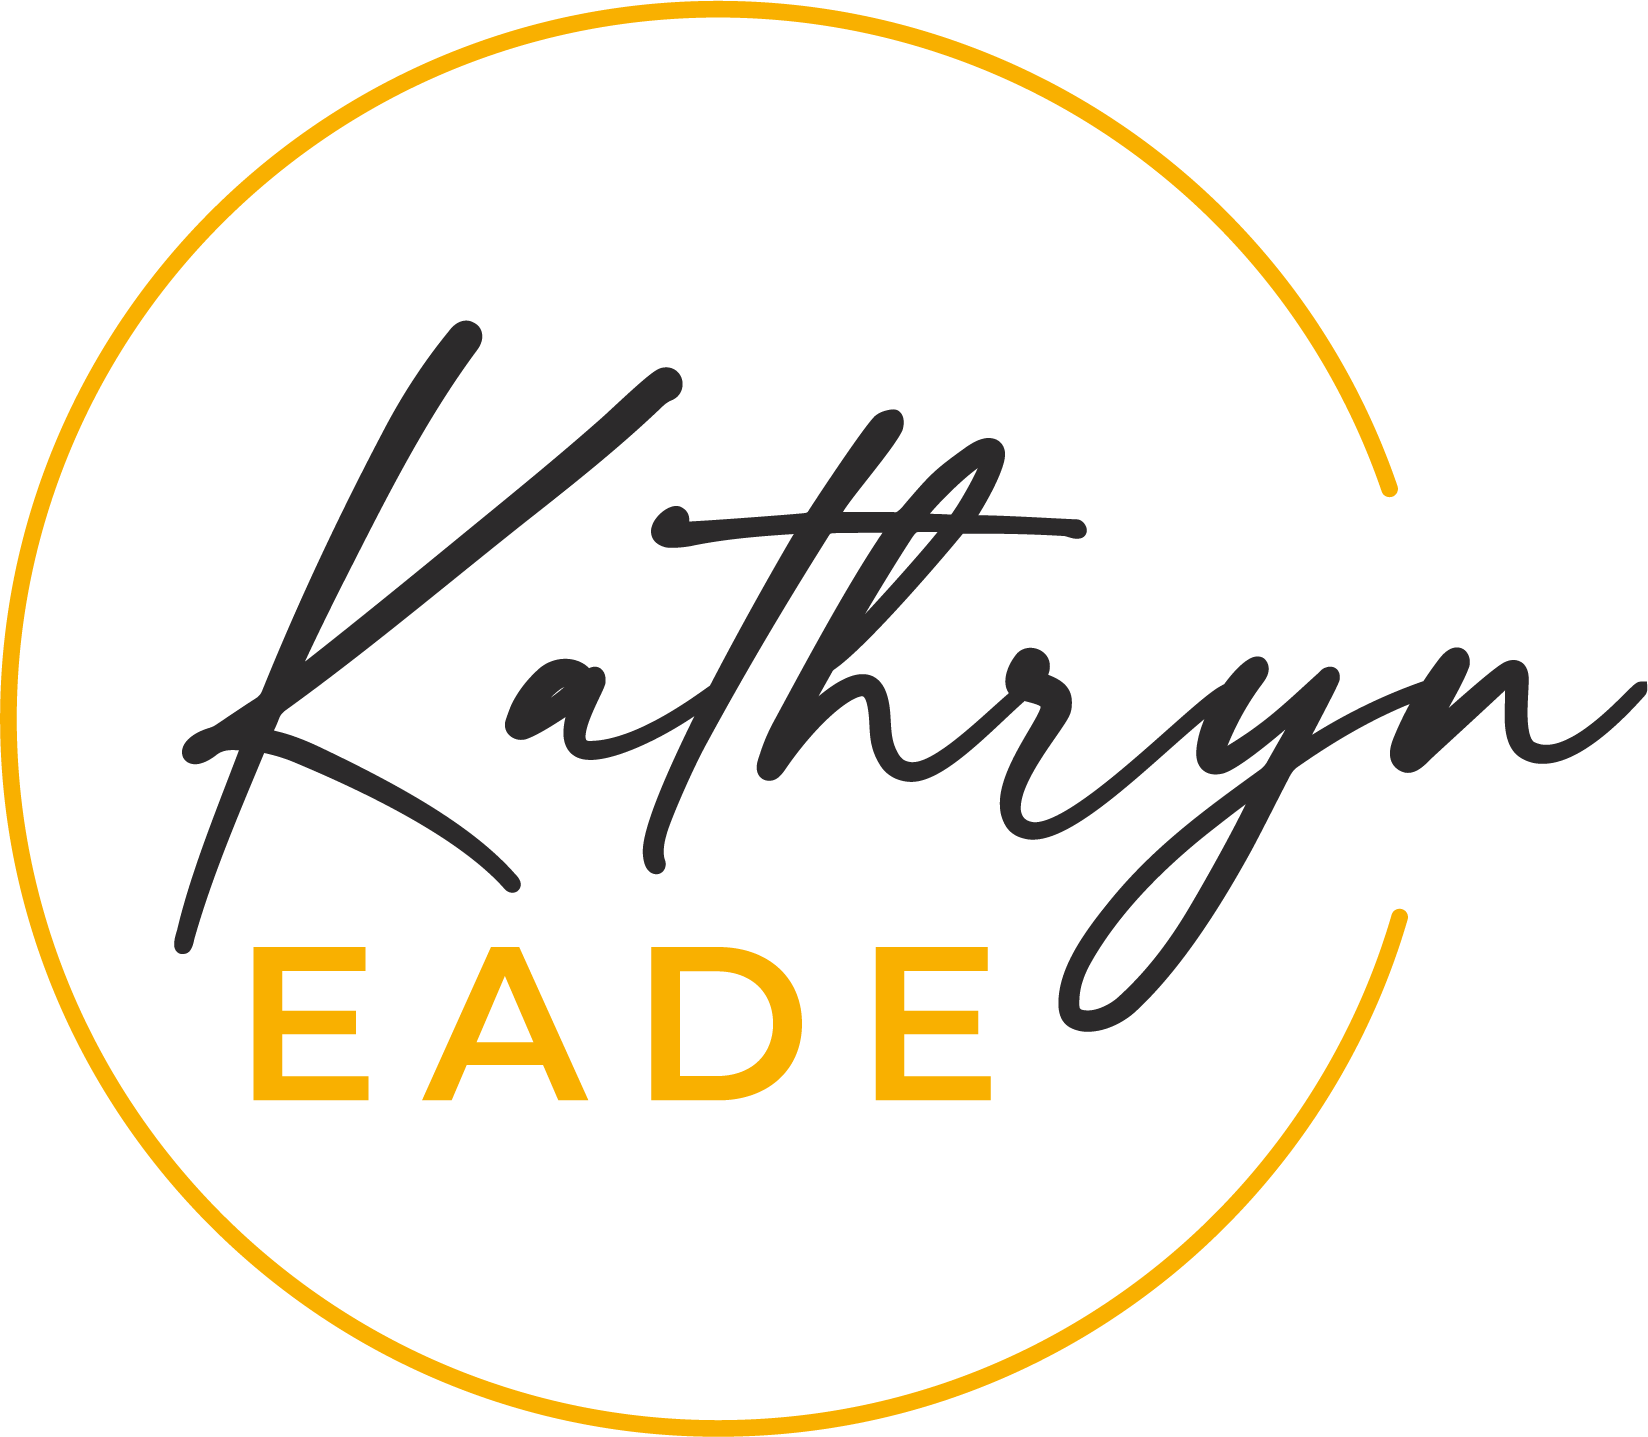 Kathryn Eade